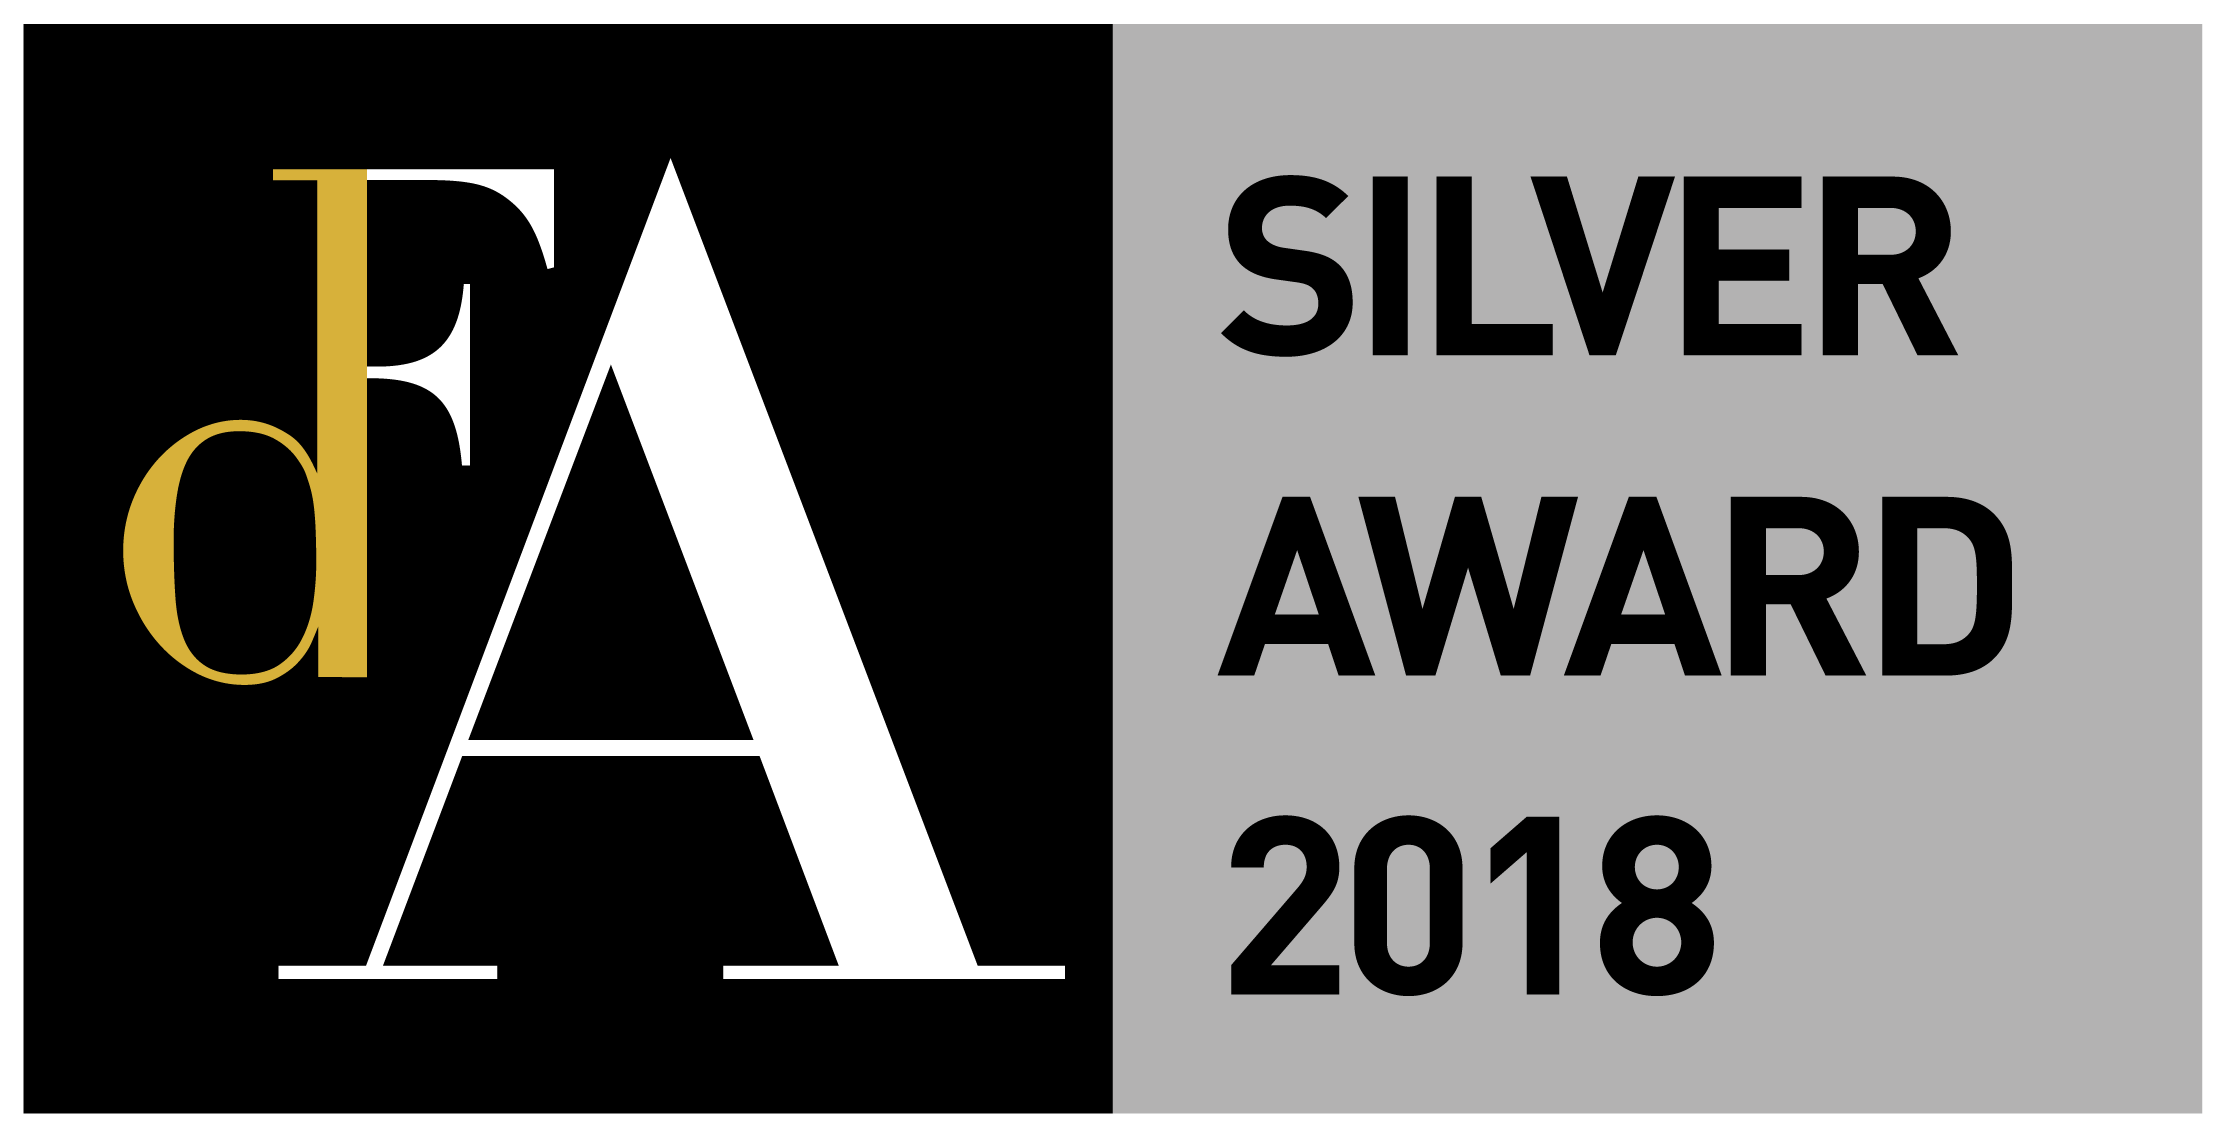 DFA Design for Asia Awards 2018 - Silver Award.png